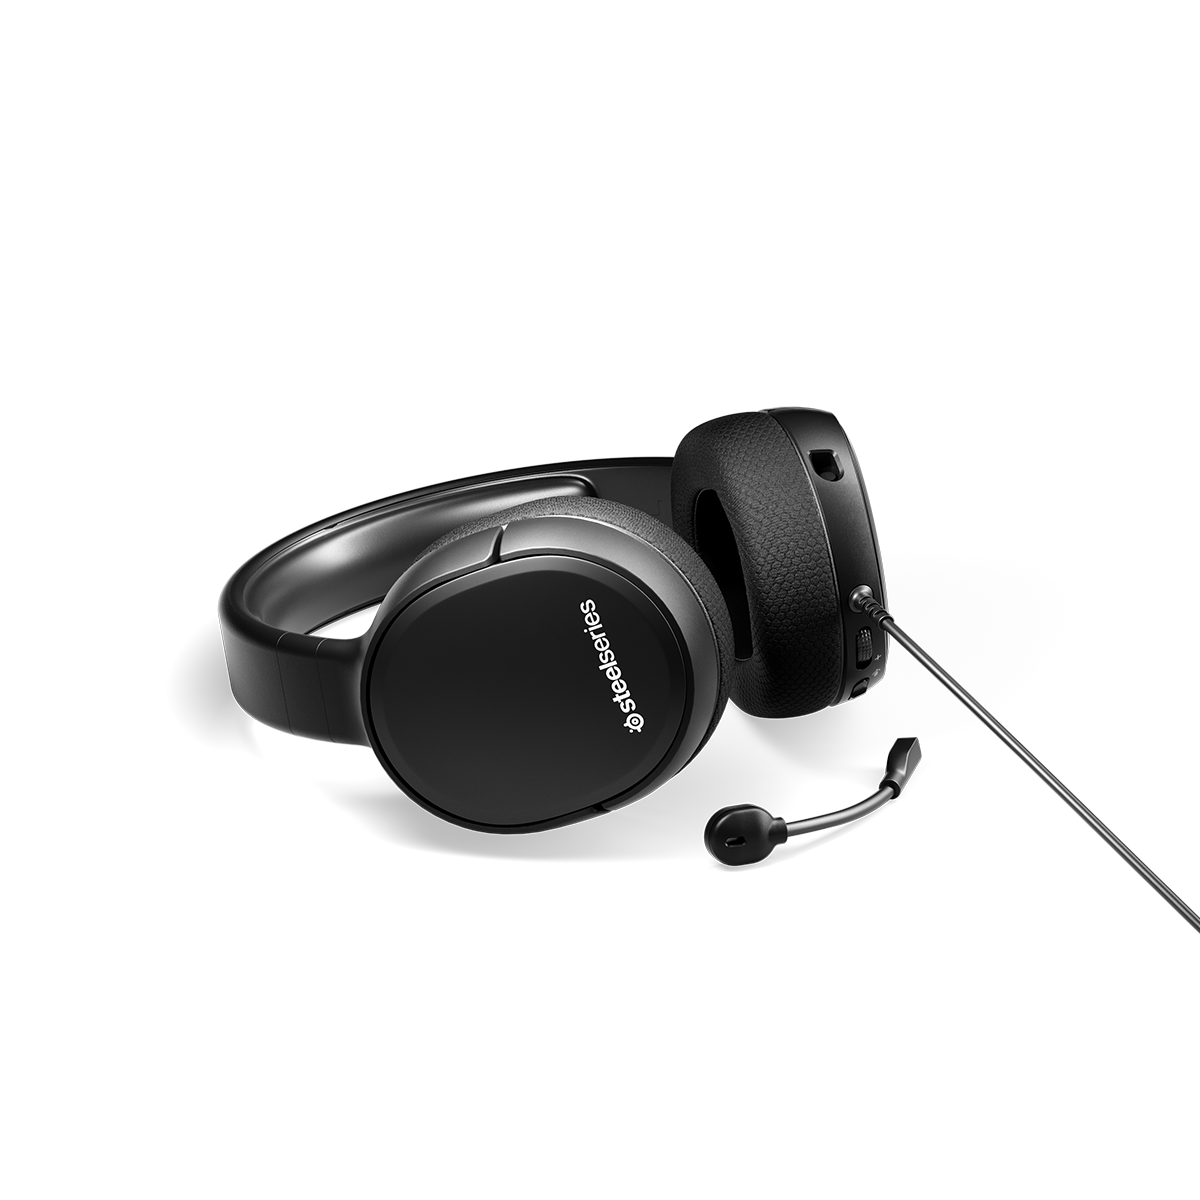 Tai nghe chụp tai gaming có dây SteelSeries Arctis 1 dành cho Xbox Series X màu đen, mic tháo rời ,Hàng chính hãng, Bảo hành 1 năm